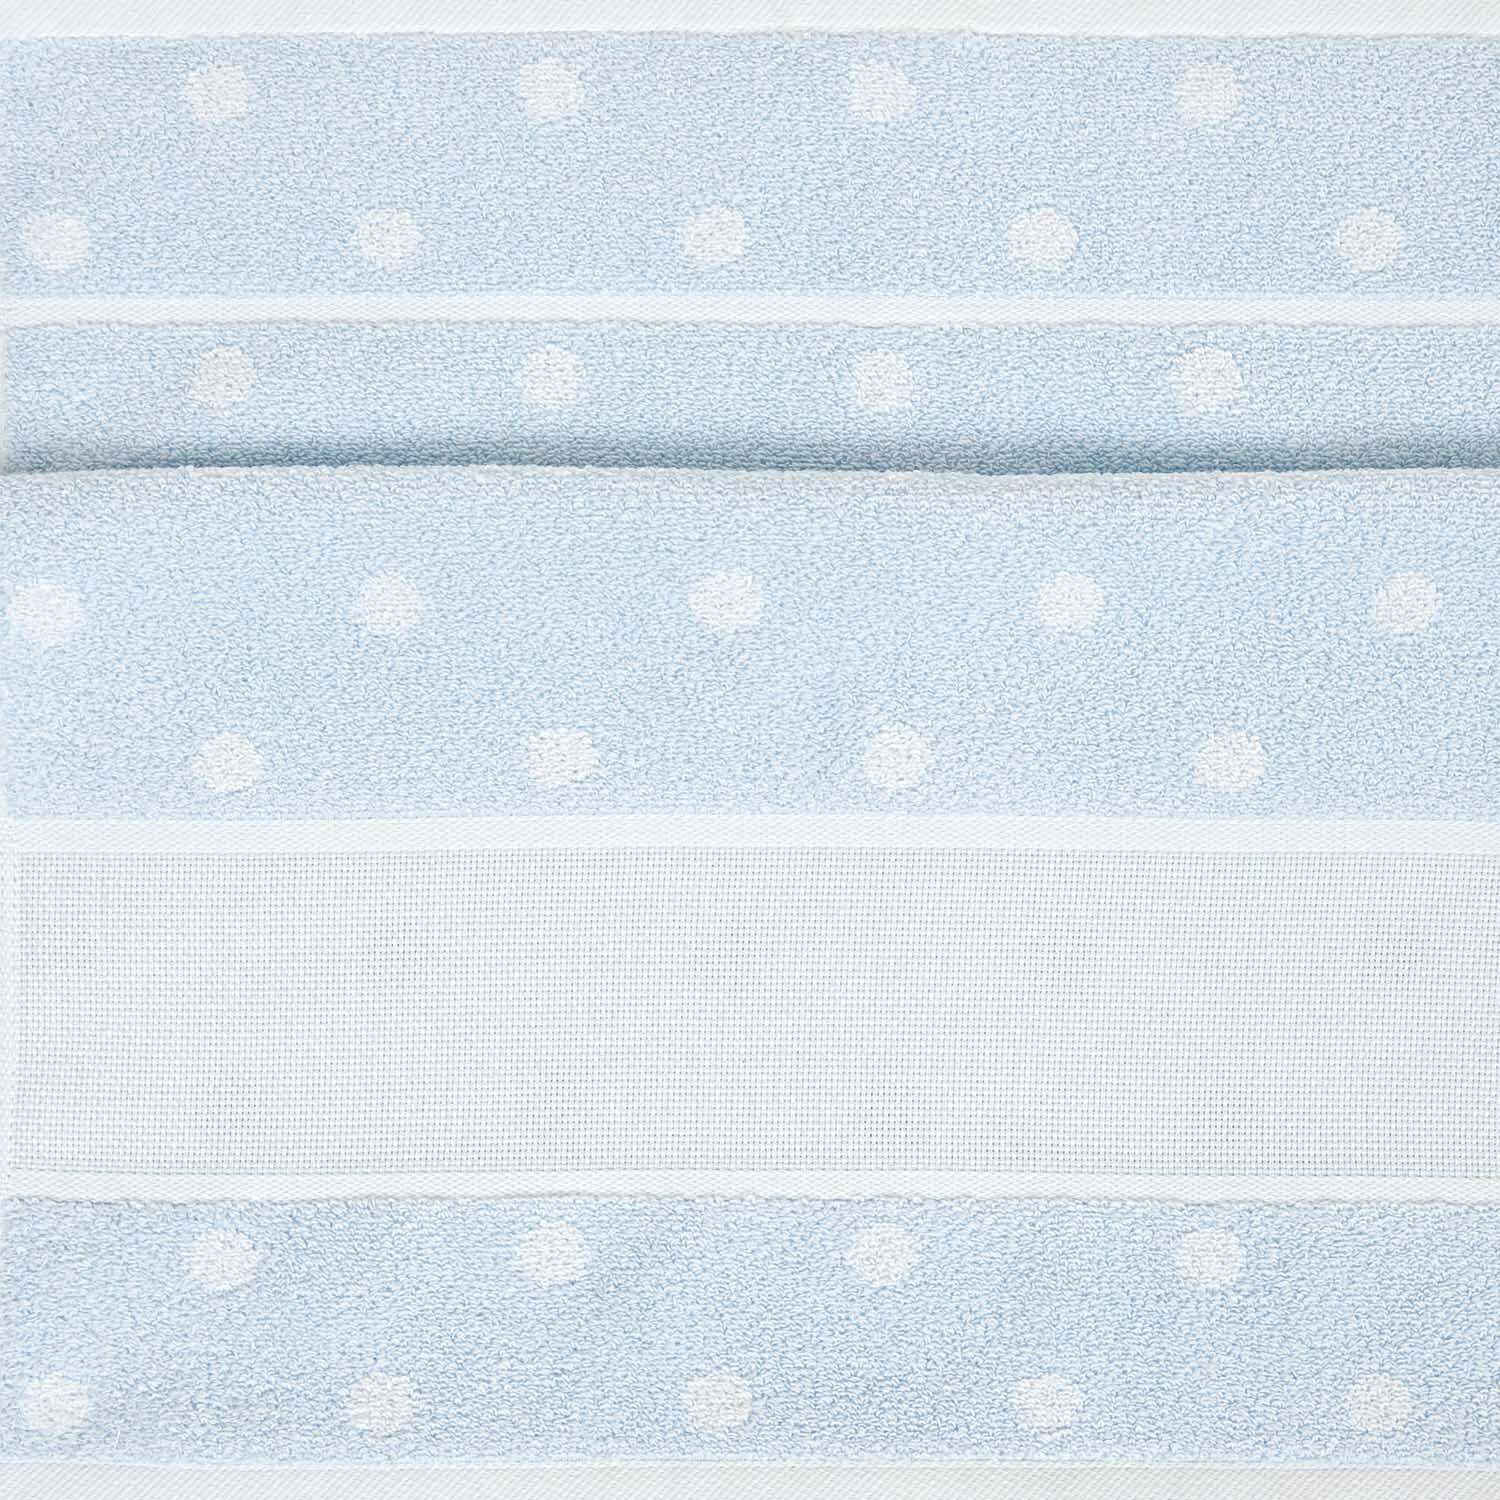 Handtuch mit weißen Punkten 50x100cm